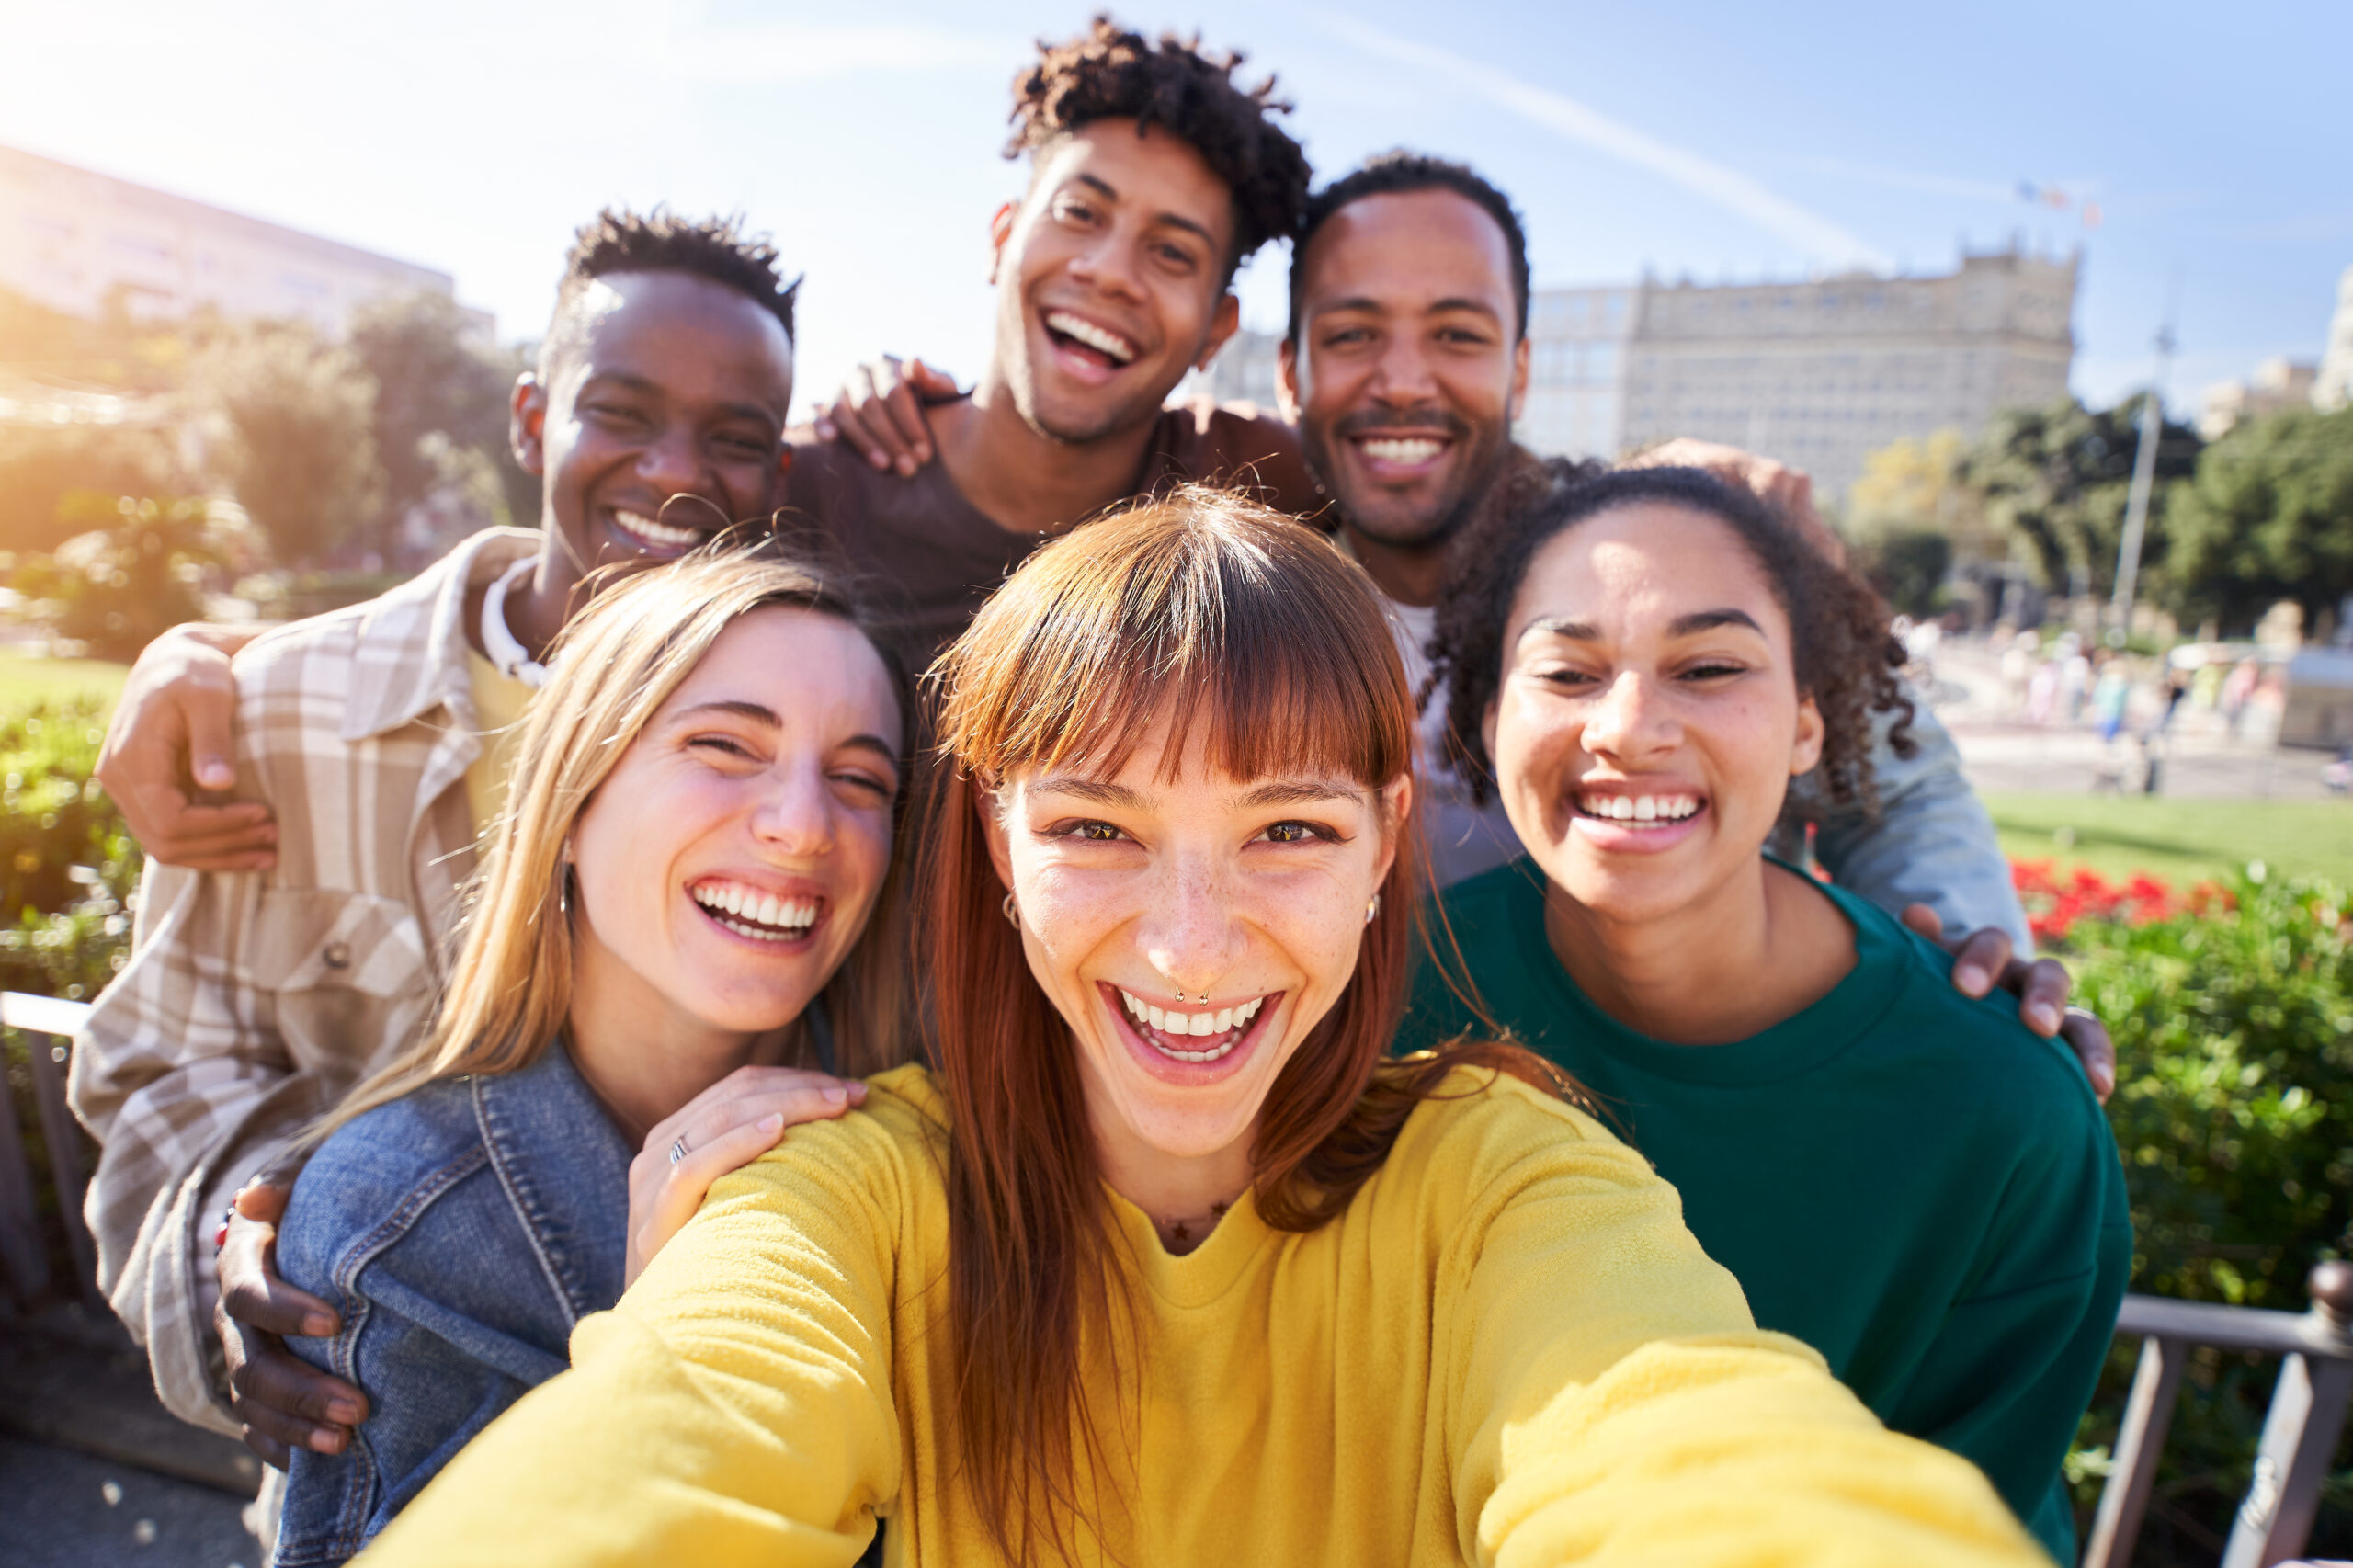 Gruppe von glücklichen Freunden, die an einem Frühlingstag für ein Selfie posieren, während sie gemeinsam im Freien feiern. Eine Gruppe multikultureller Freunde, die am Wochenende eine gute Zeit miteinander verbringen.